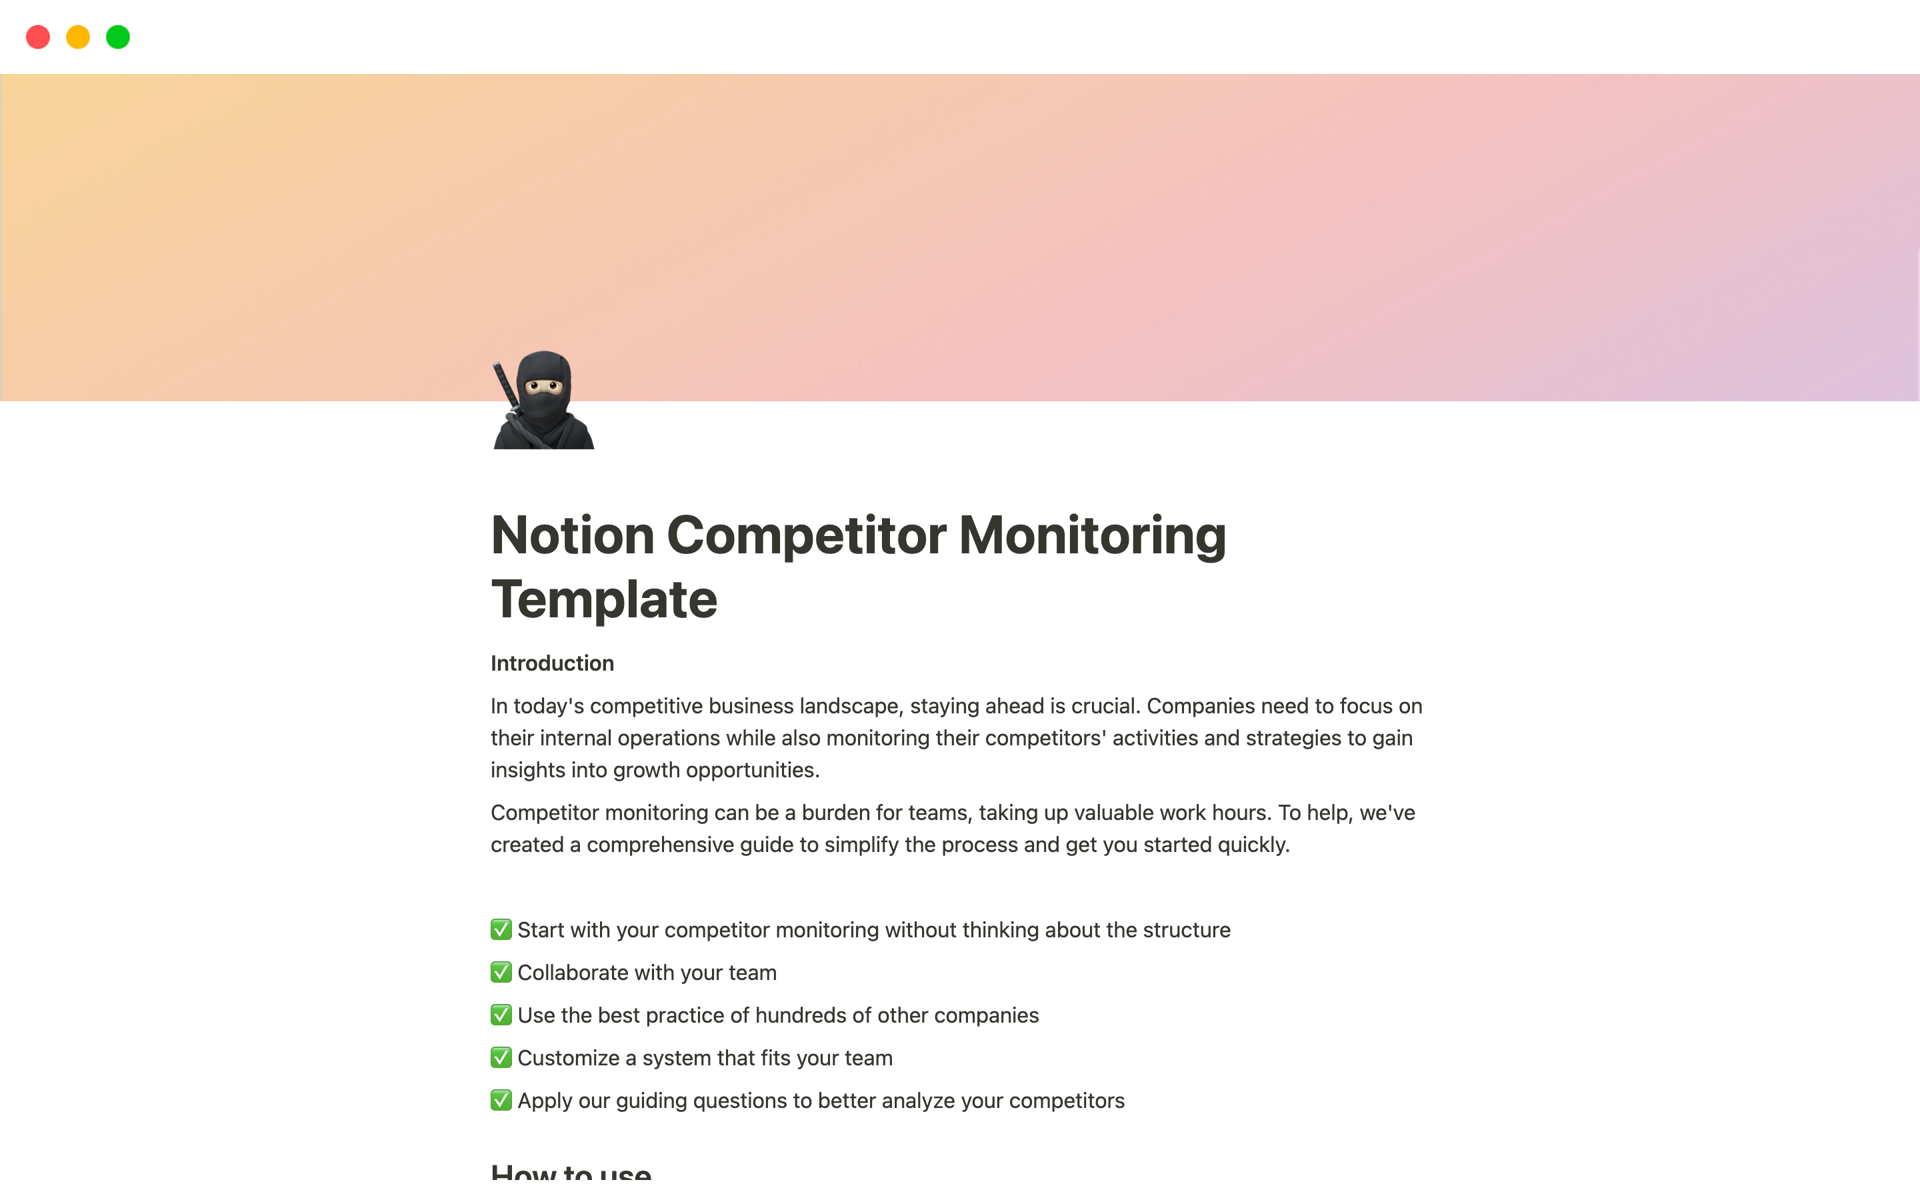 Uma prévia do modelo para Notion Competitor Monitoring Template